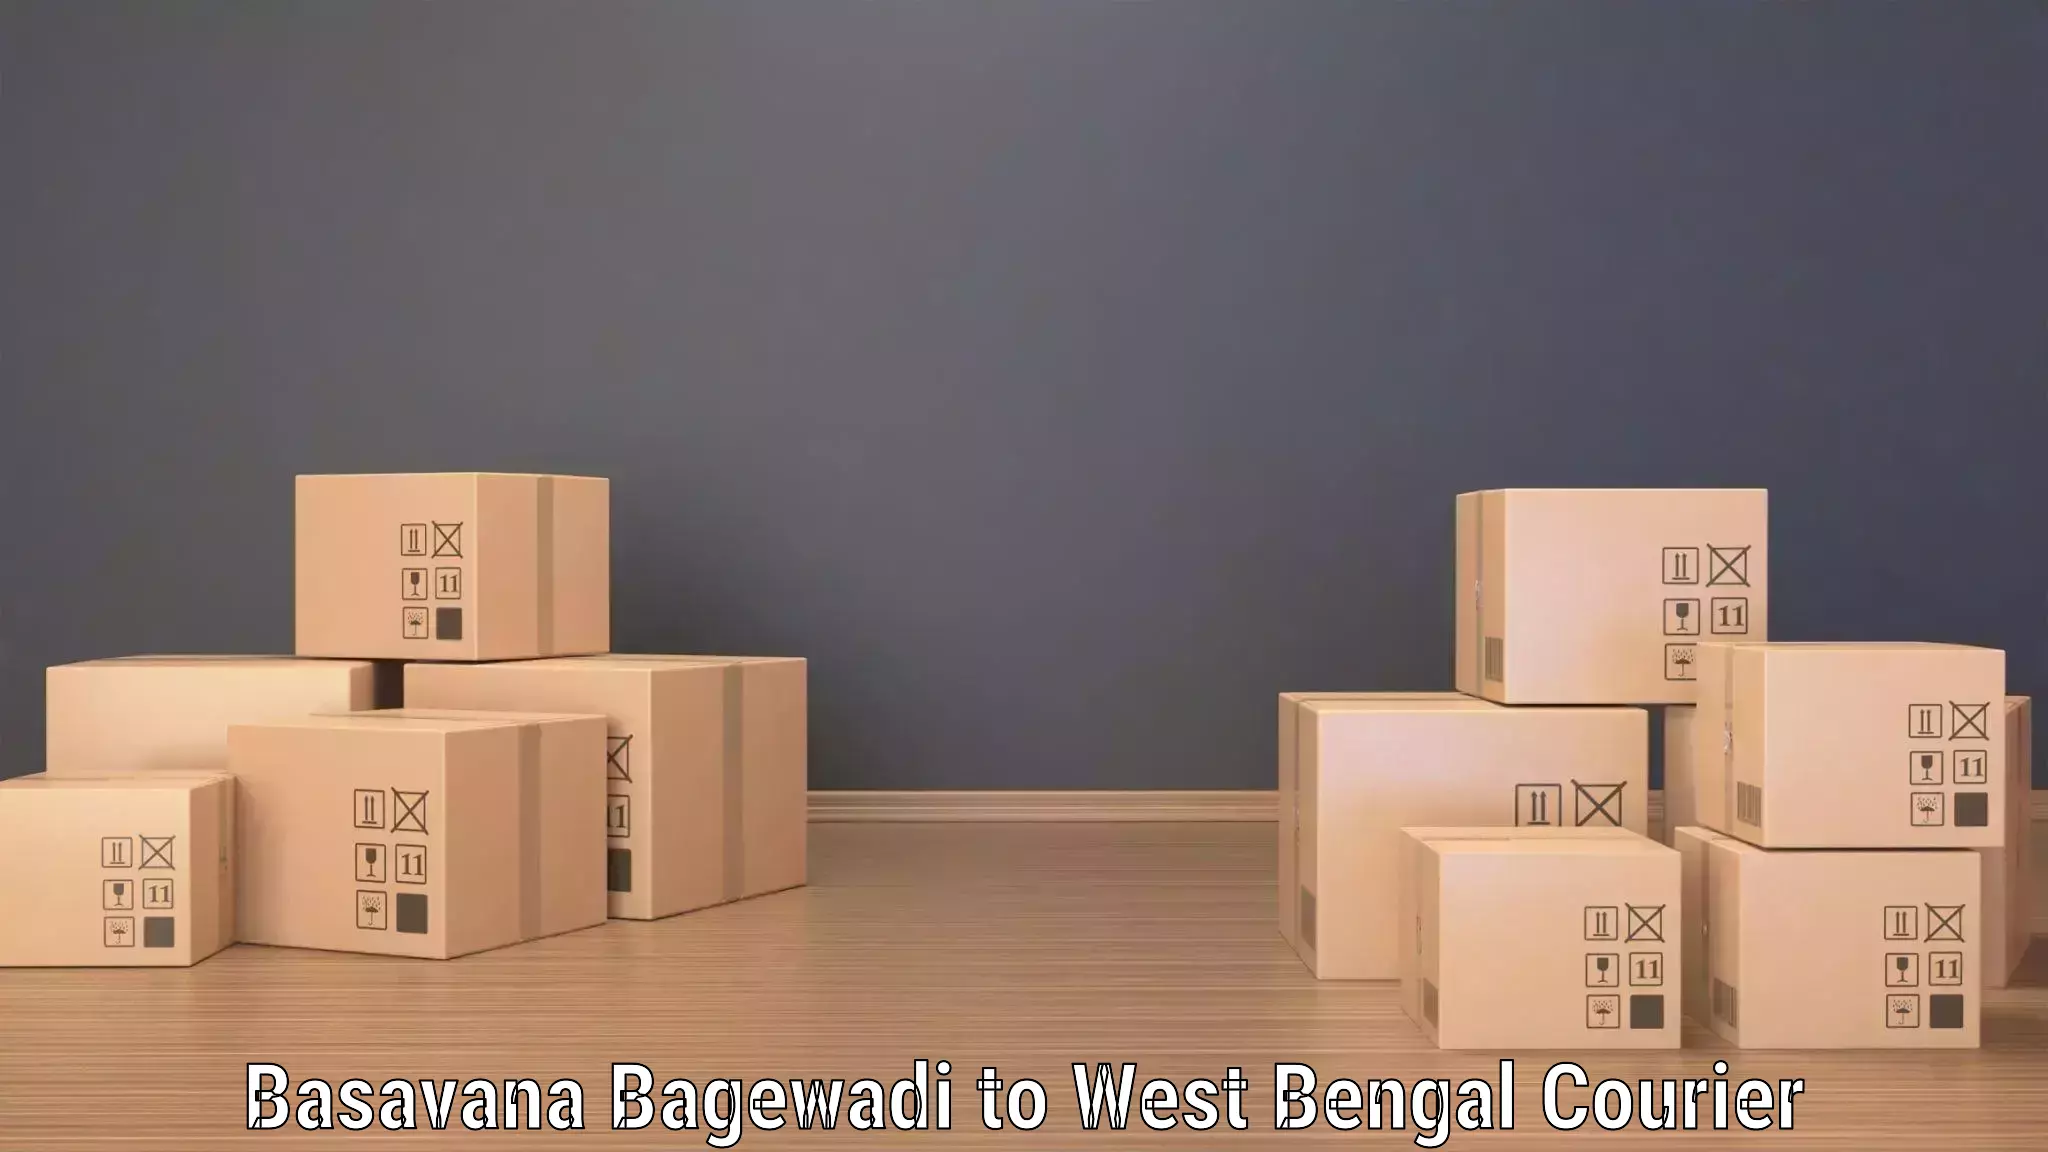 Nationwide parcel services Basavana Bagewadi to Mekhliganj